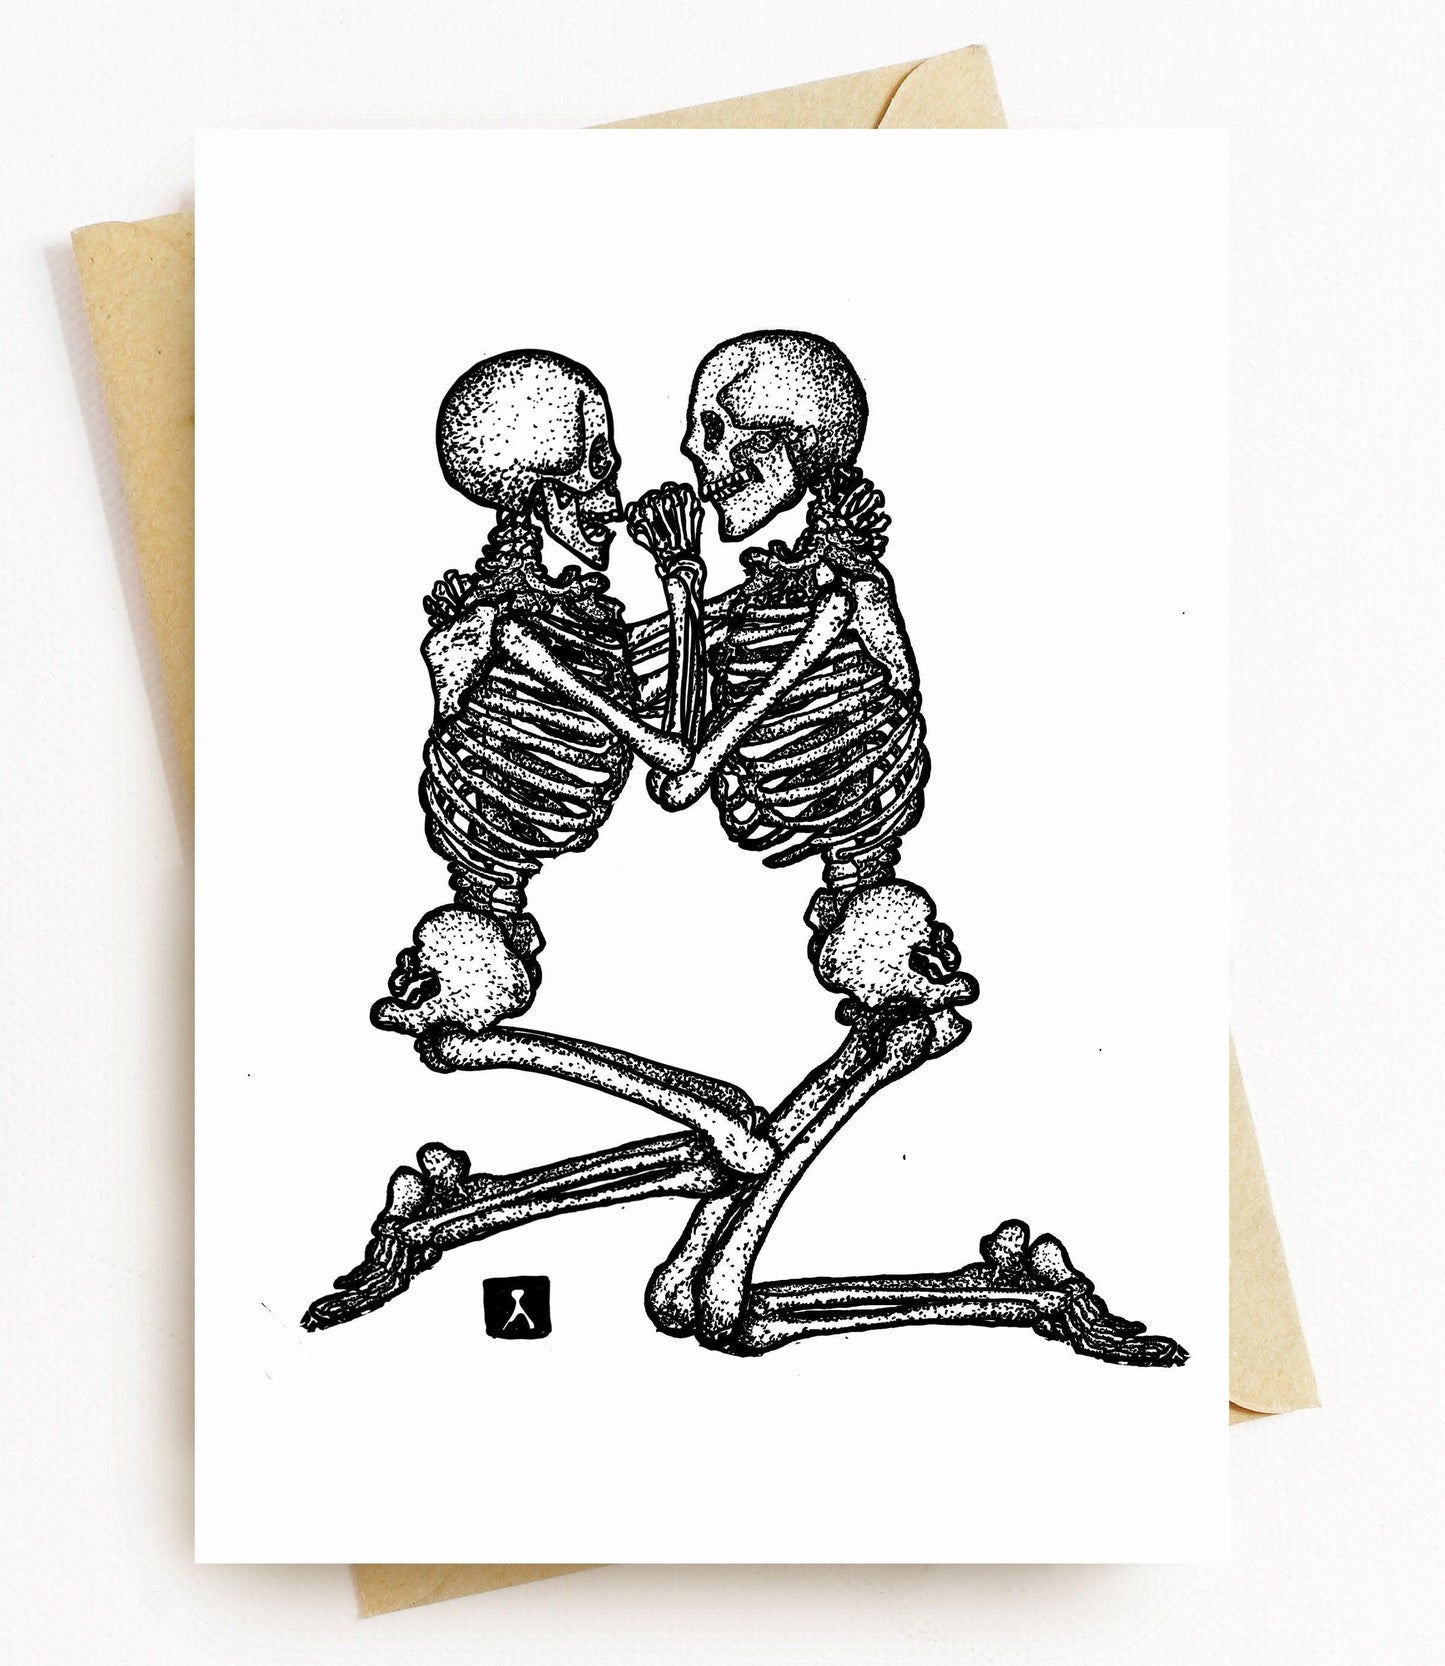 BellavanceInk: Greeting Card With Skeletons Embracing 5 x 7 Inches - BellavanceInk